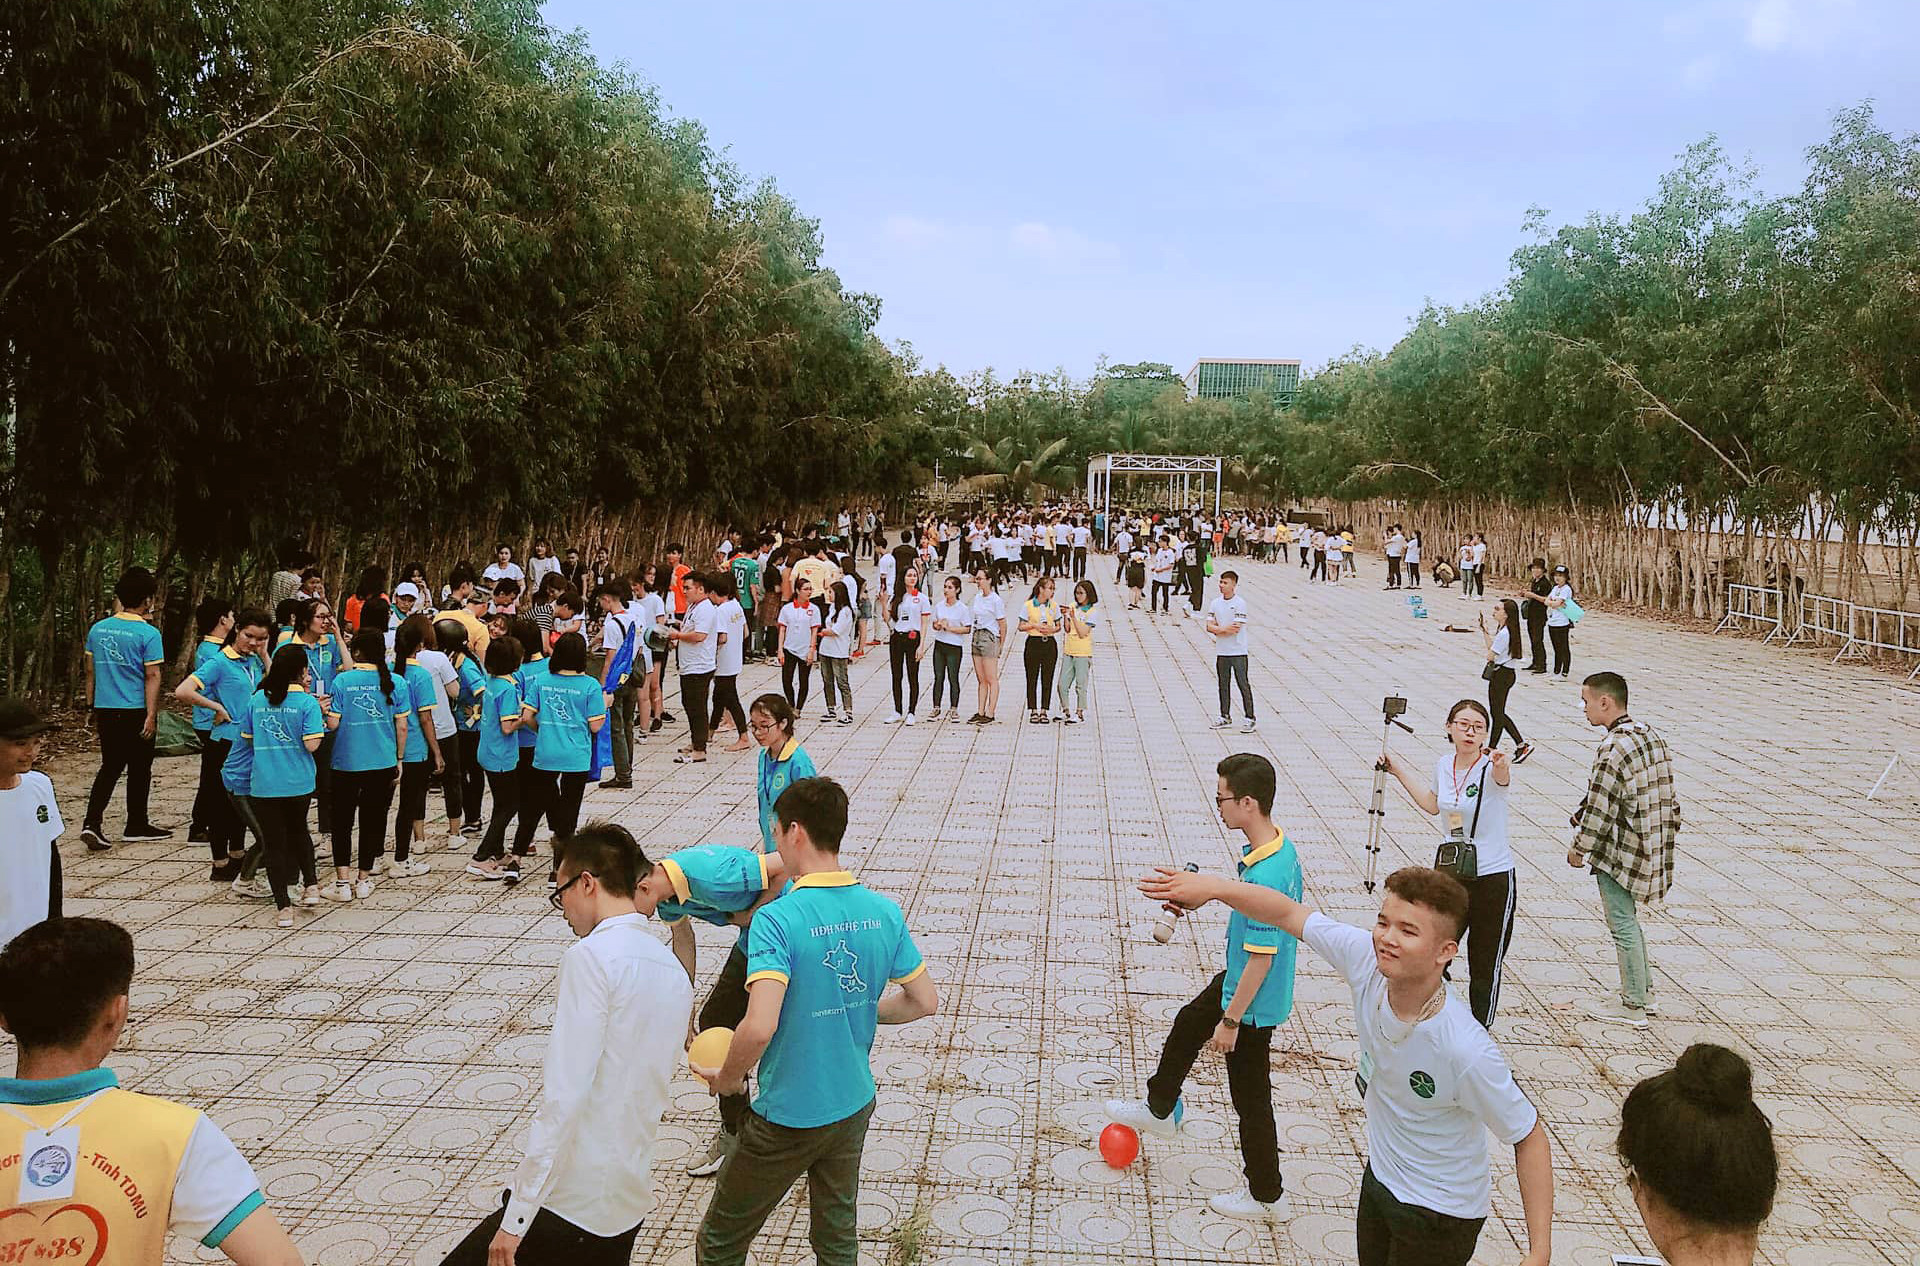 Đây là ngày hội thường niên do Hội đồng hương sinh viên Nghệ Tĩnh tại thành phố Hồ Chí Minh tổ chức, nhằm kết nối sinh viên Nghệ Tĩnh, các thế hệ người Nghệ tĩnh ở miền Nam. Thông qua hoạt động này còn nhằm tăng cường giao lưu, học hỏi và tôn vinh truyền thống văn hóa quê hương.